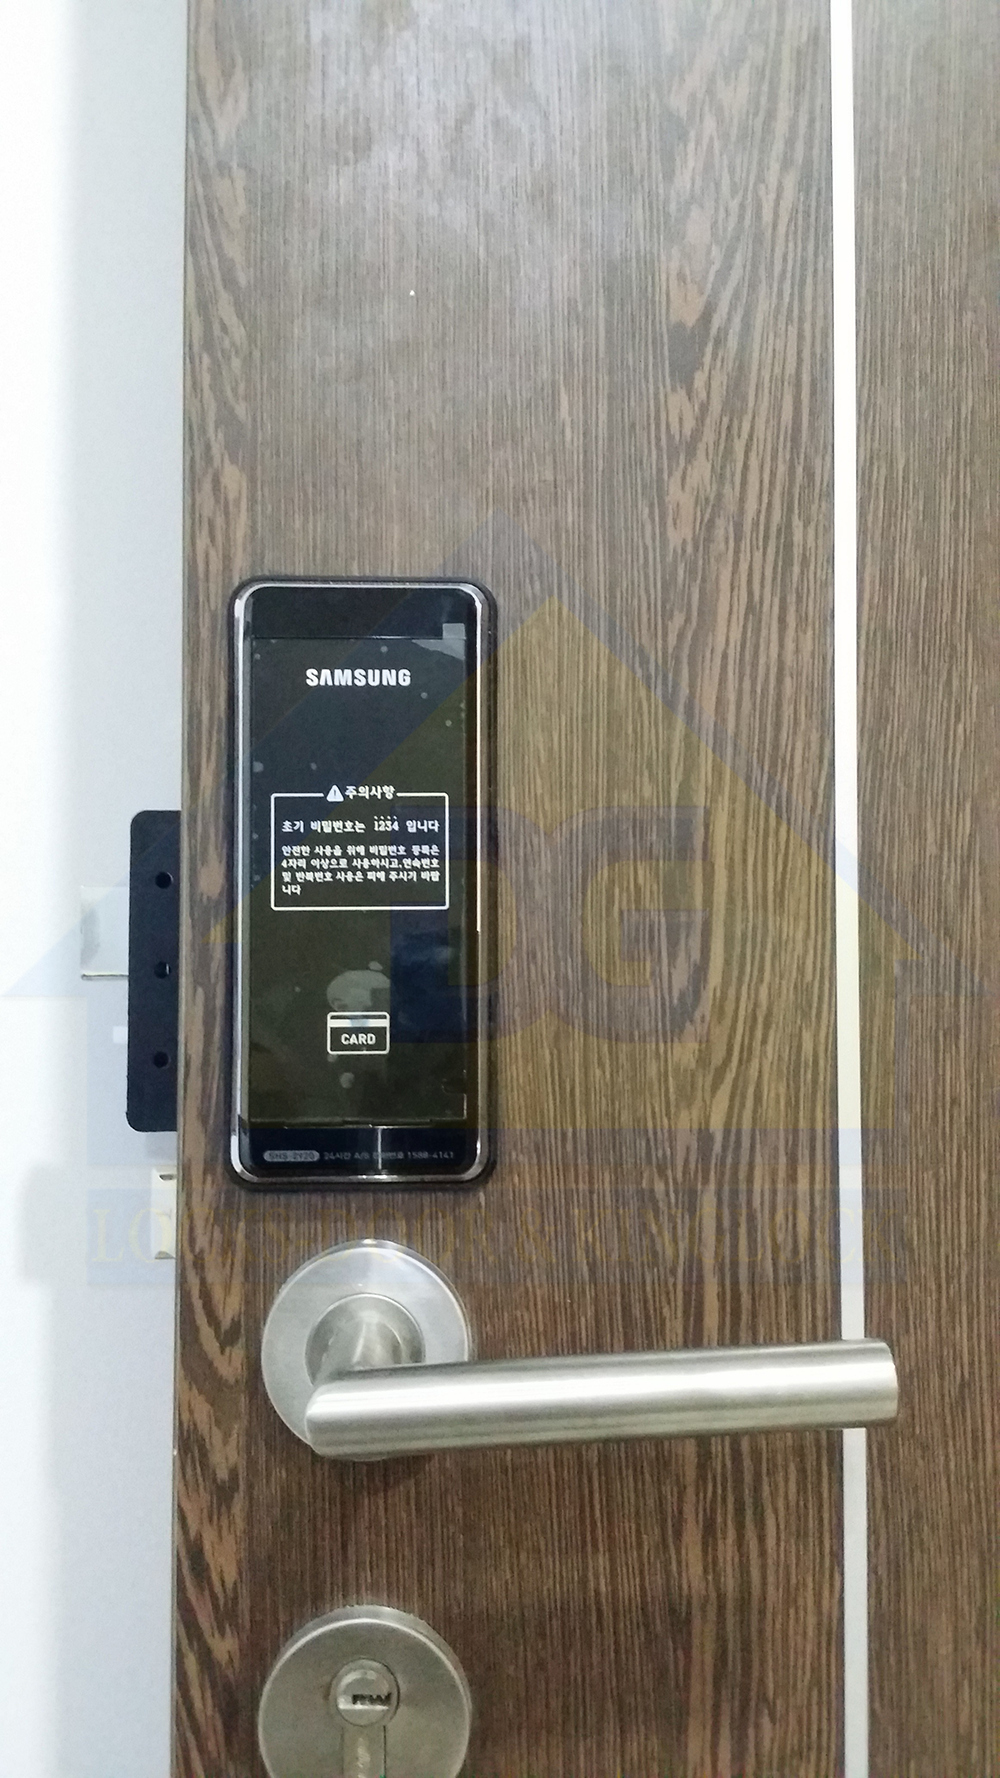 Chung cư Lexington, An phú, Quận 2, lắp đặt khóa thẻ từ Samsung SHS-2920